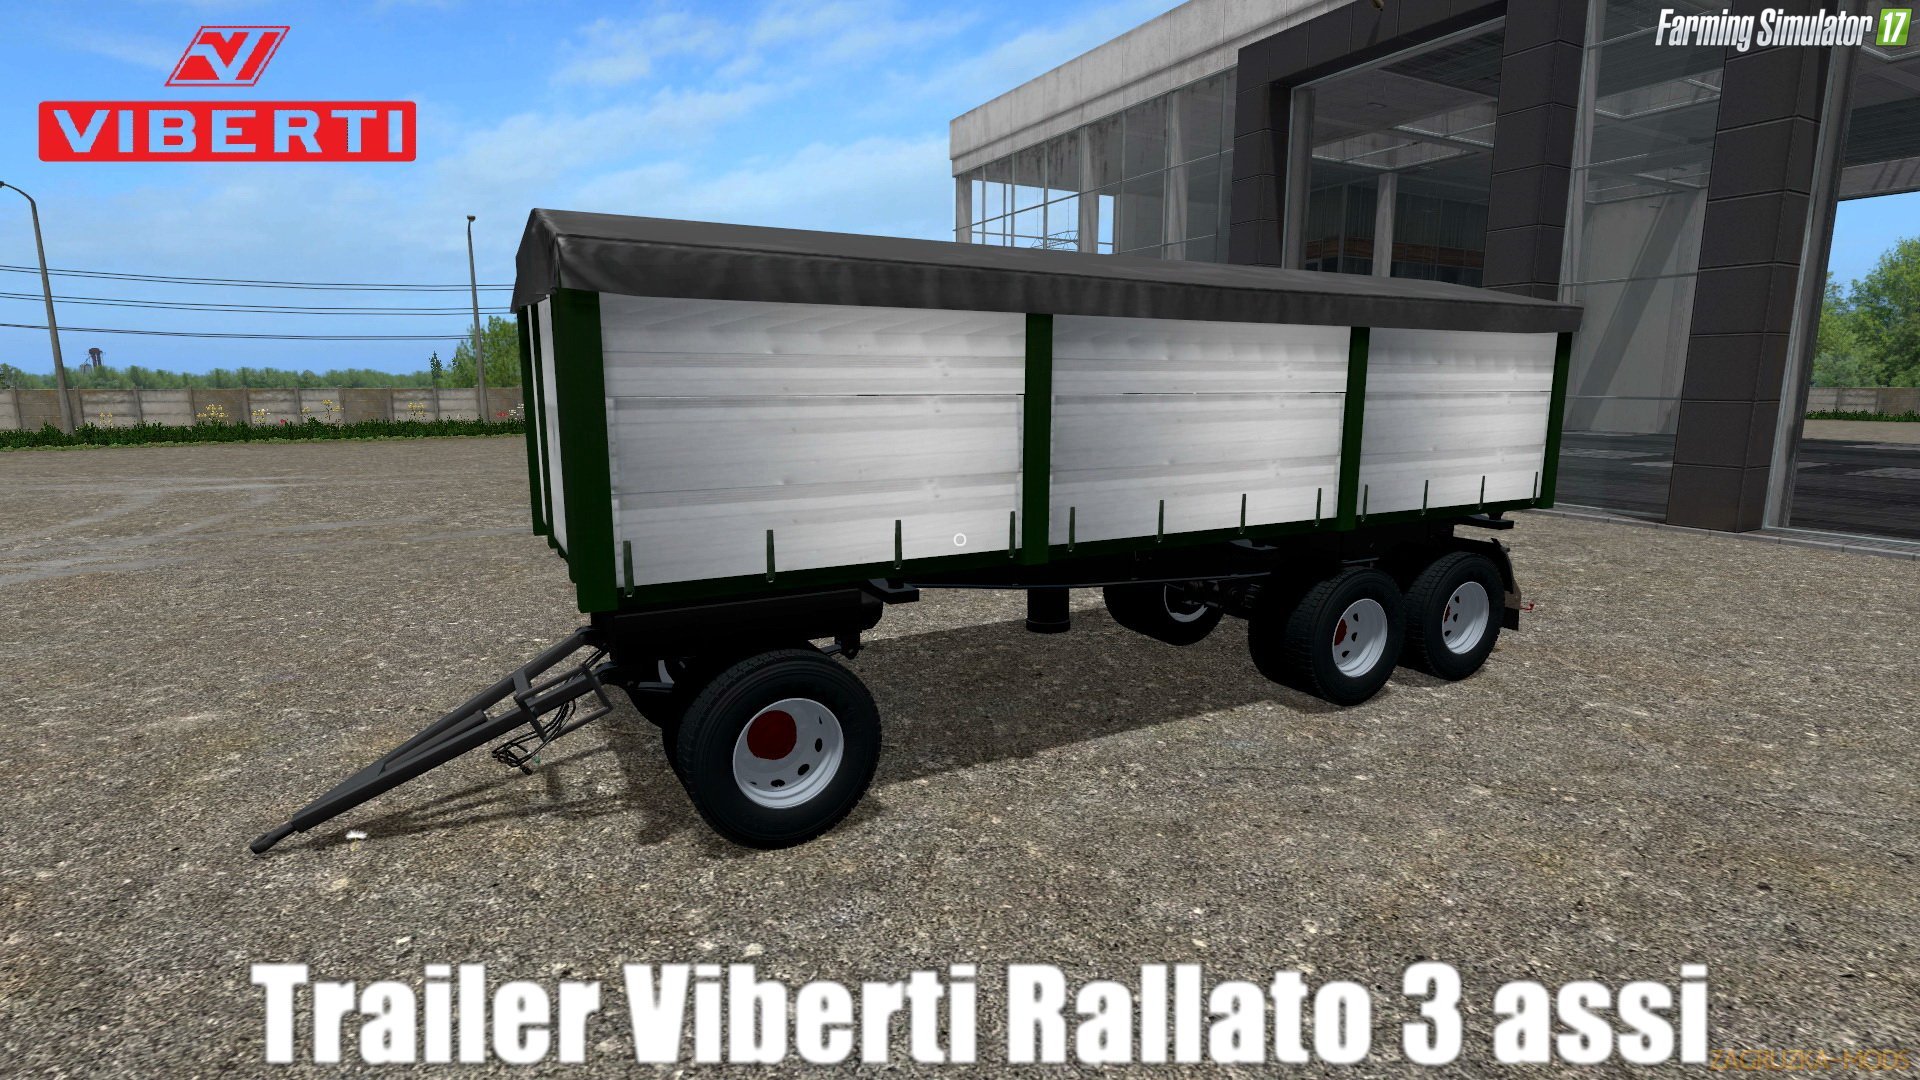 Viberti Rallato 3 assi v2.0 for FS 17